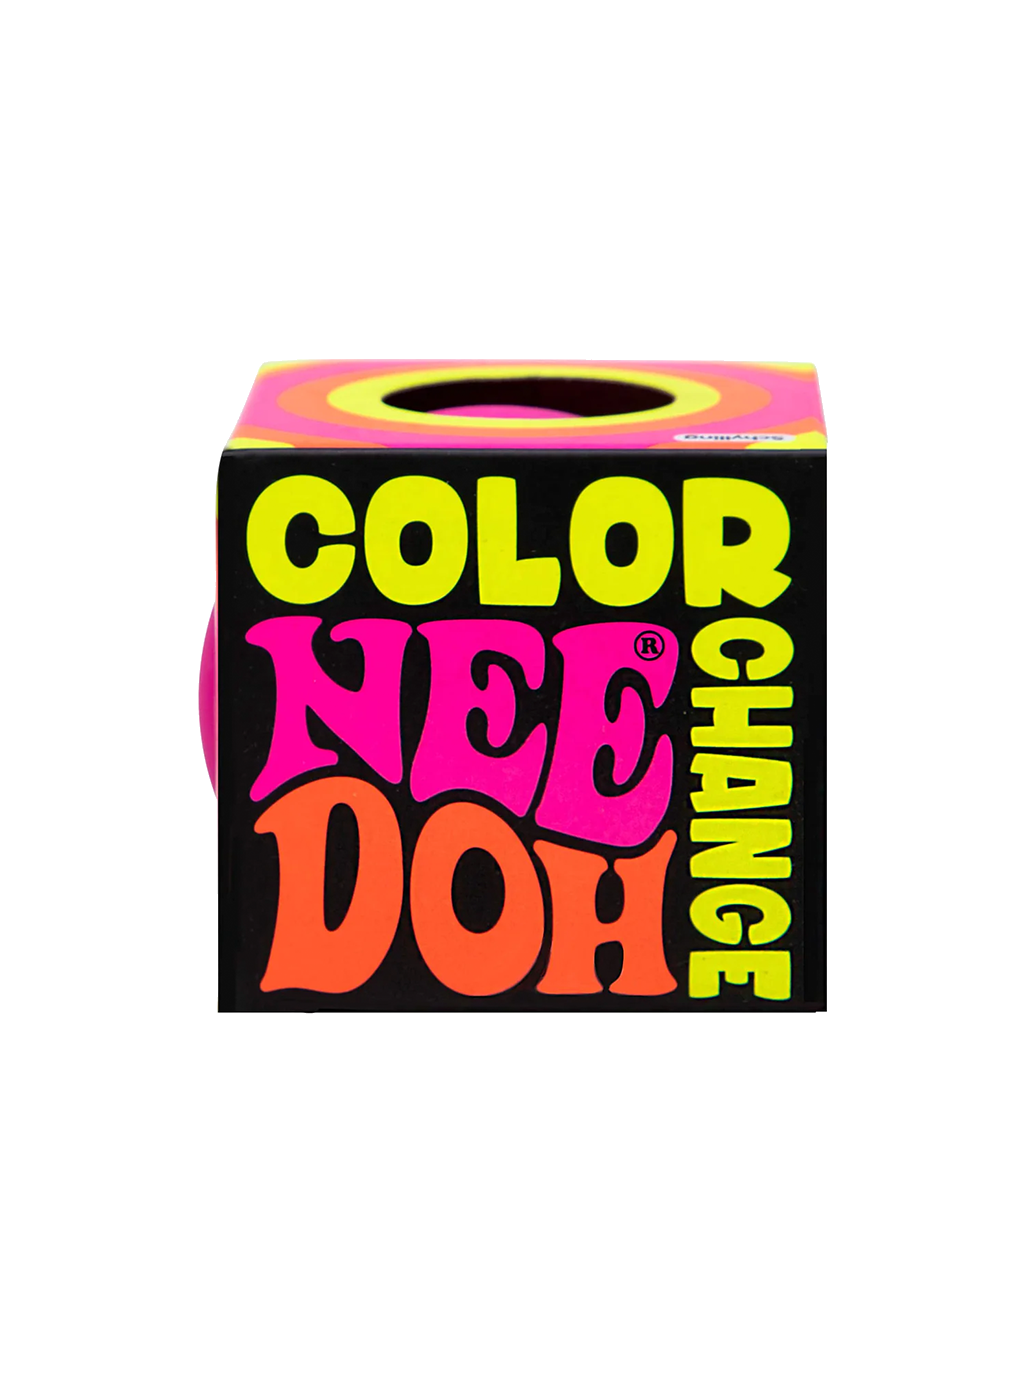 The color change NeeDoh